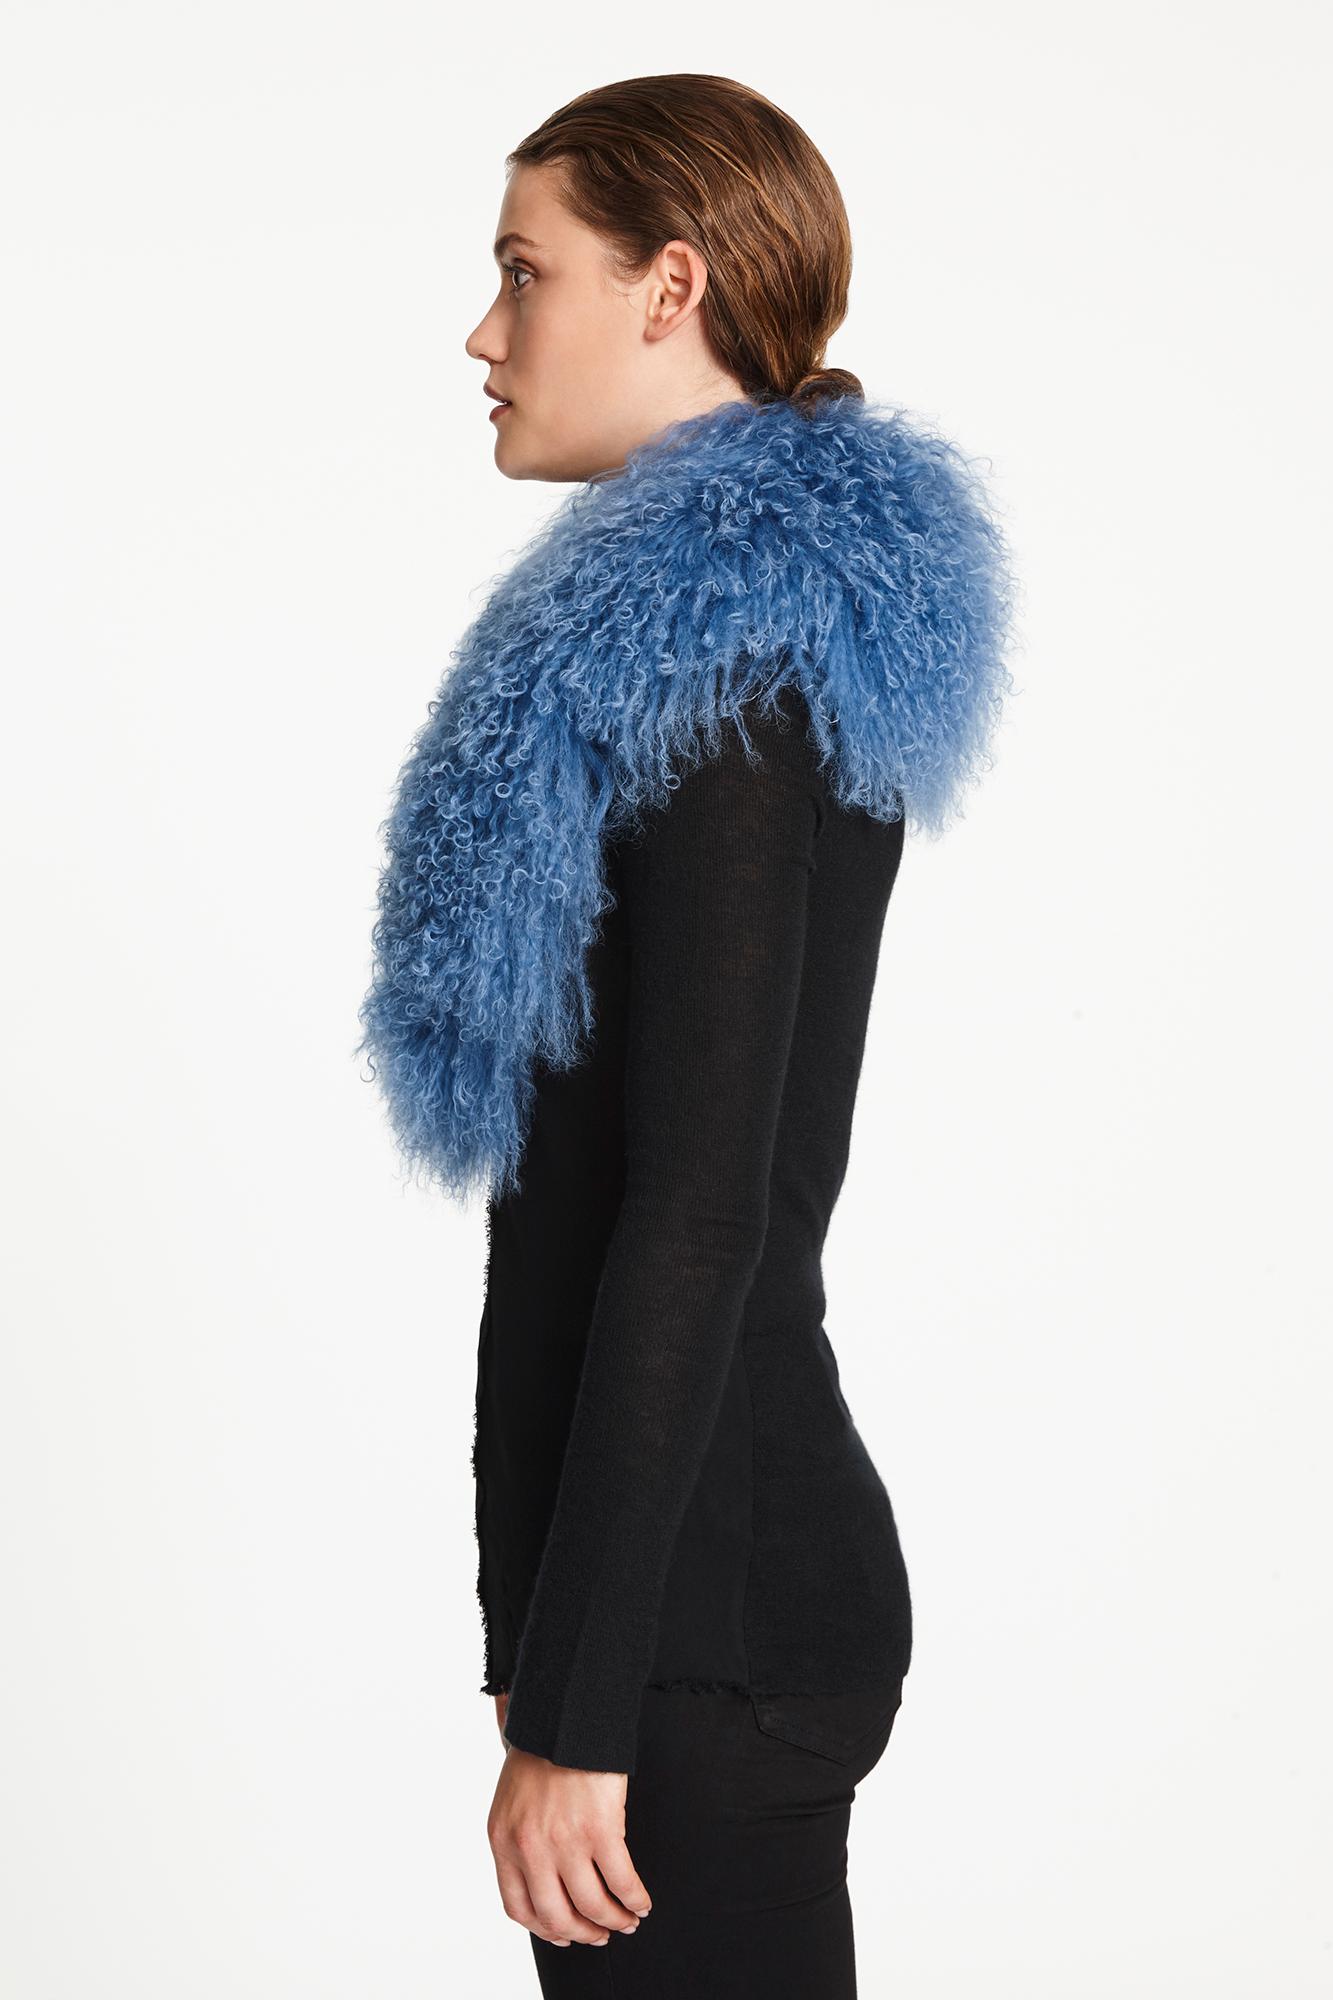 Verheyen London Shawl Collar in Blue Topaz Mongolian Lamb Fur lined in silk   3